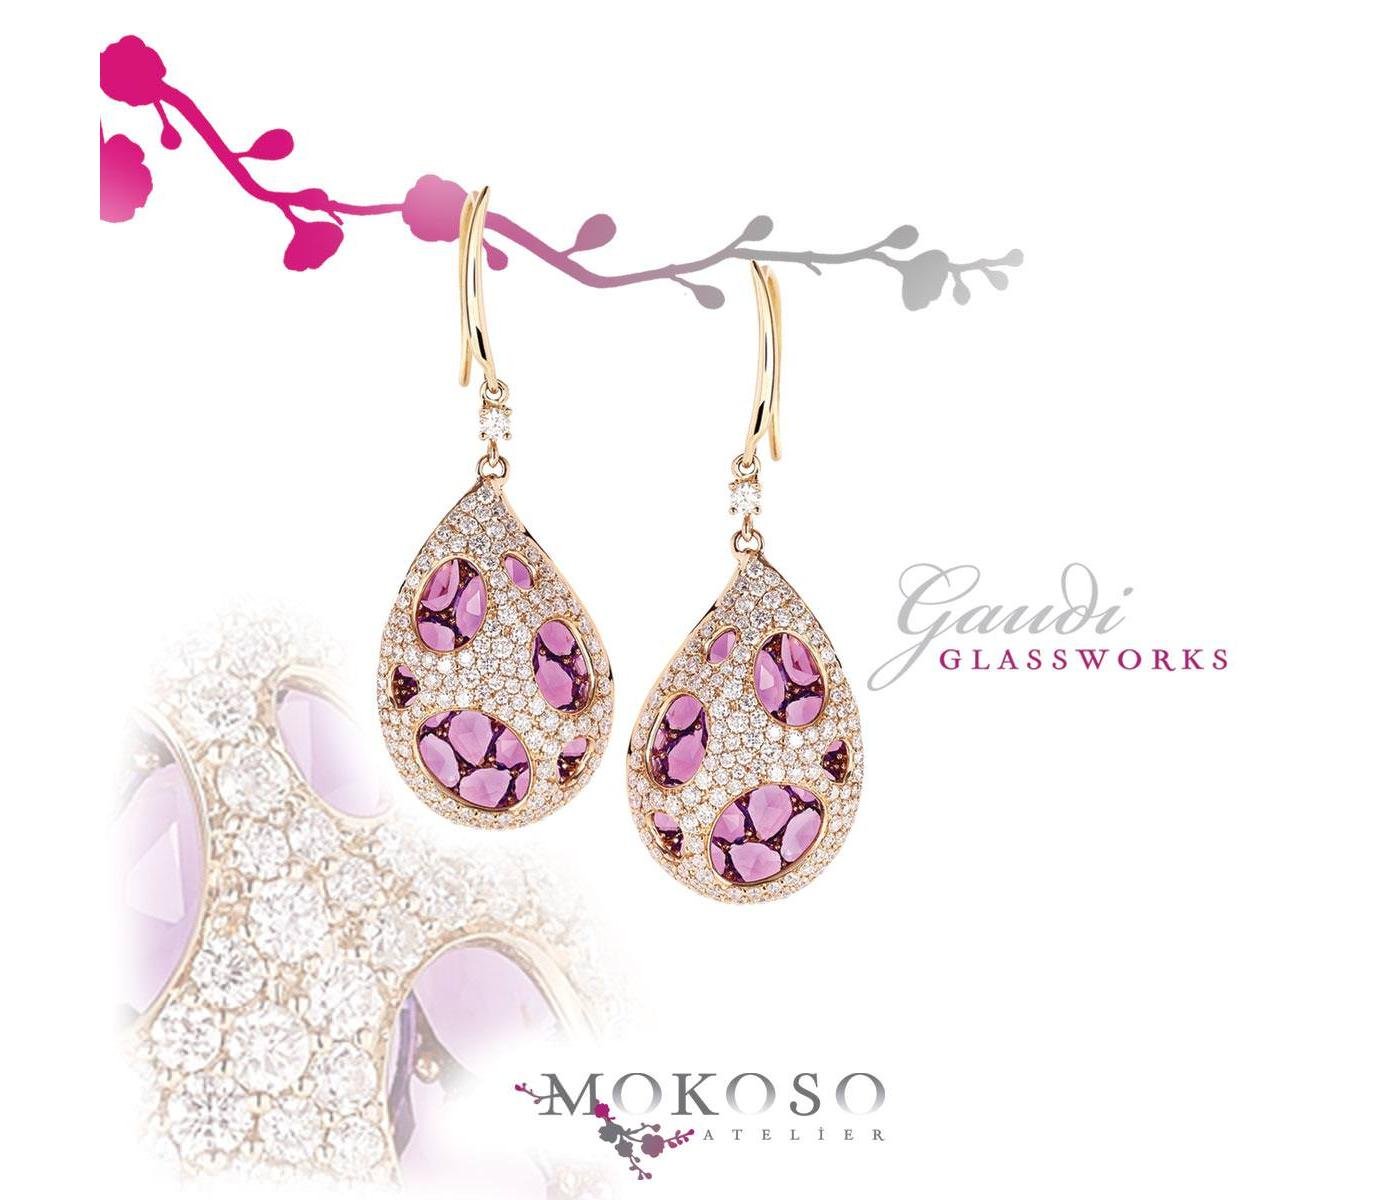 Earrings by Mokoso